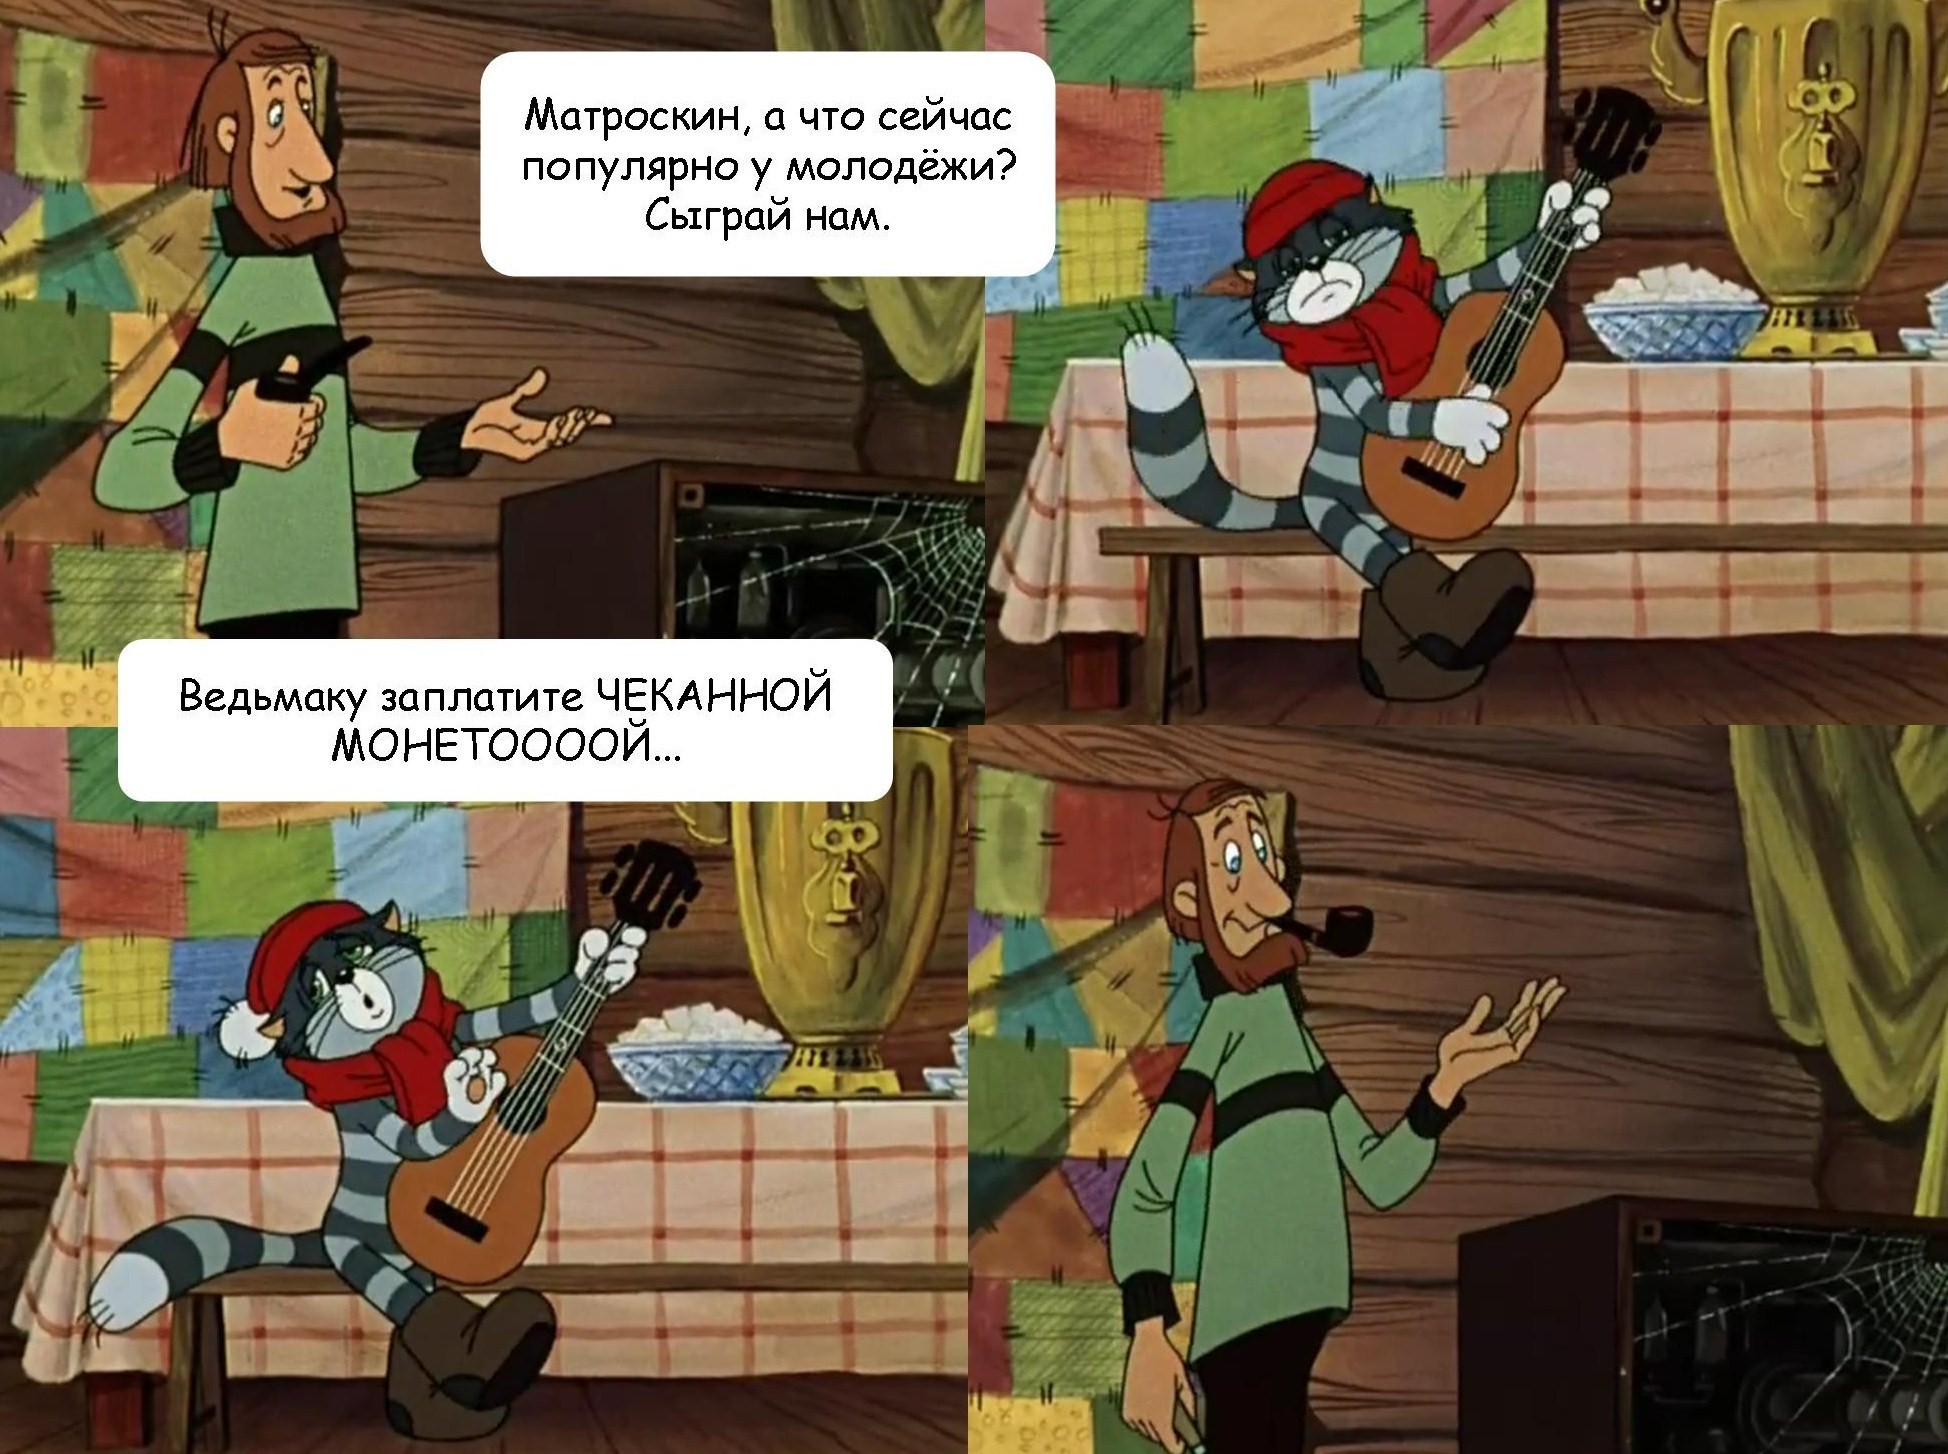 Простоквашино комиксы Матроскин